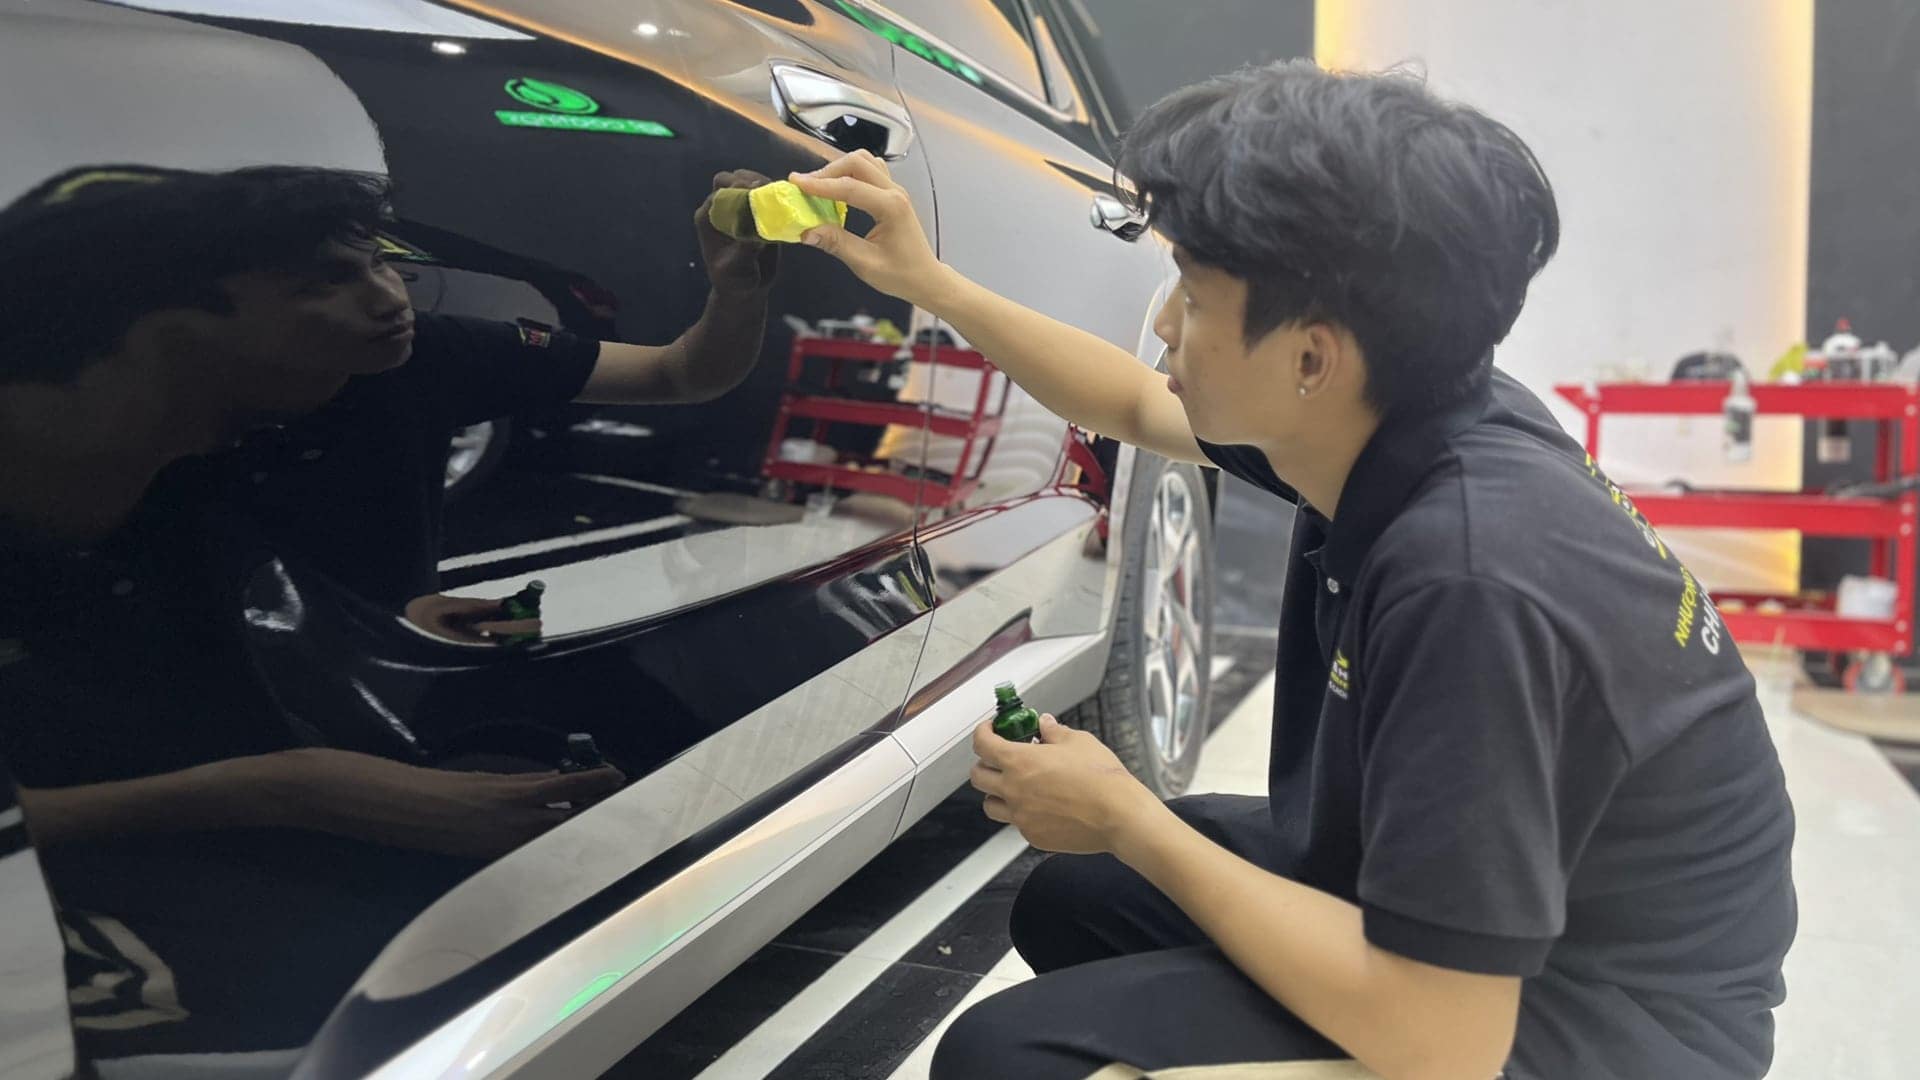 Tại Vietnam Car Care Academy, khoá học phủ Ceramic và chăm sóc xe được đào tạo bài bản dưới sự hướng dẫn của chuyên gia người nước ngoài.